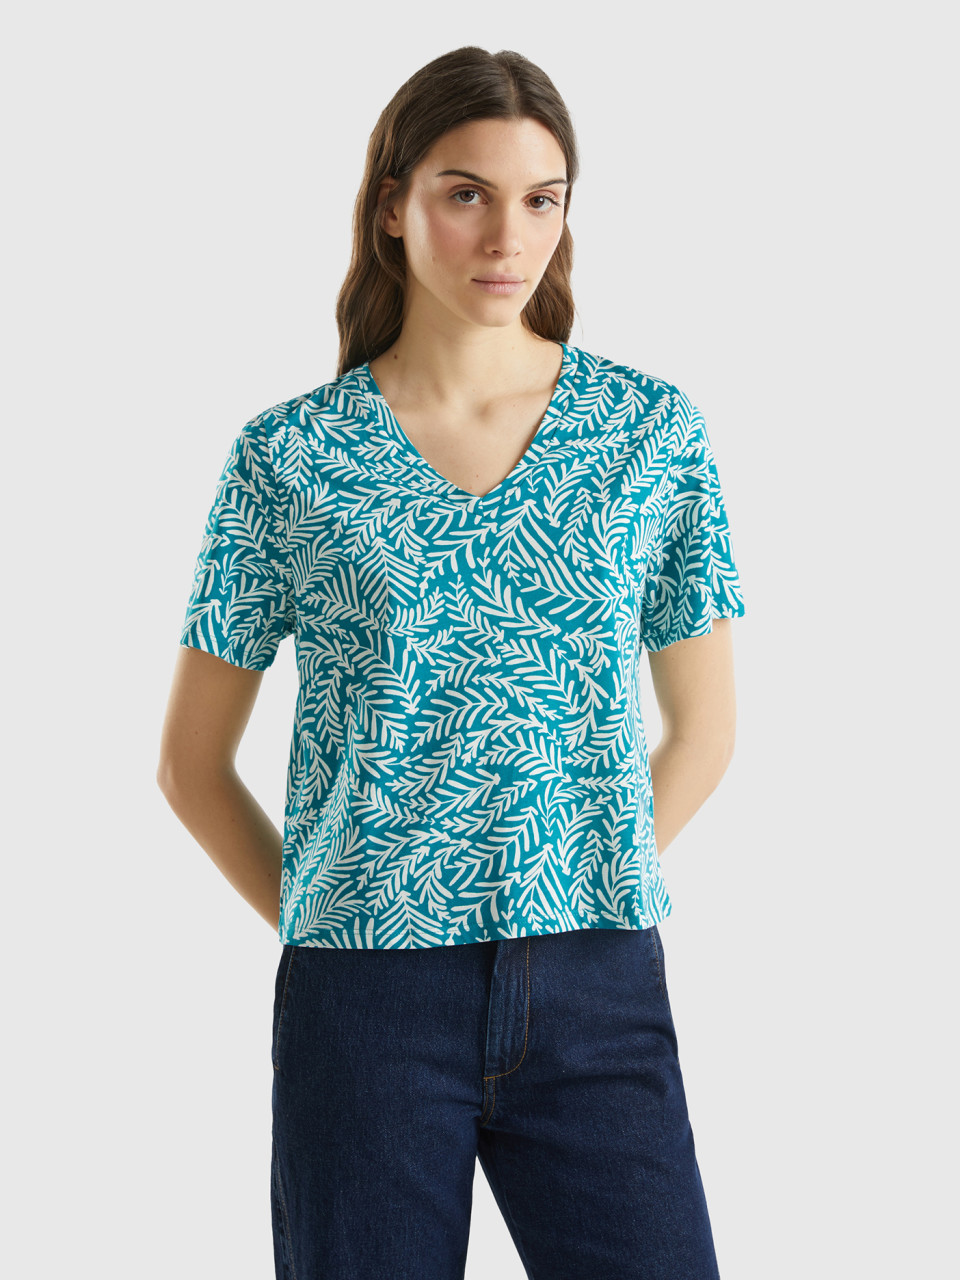 Benetton, Long Fiber Cotton Patterned T-shirt, Teal, Women